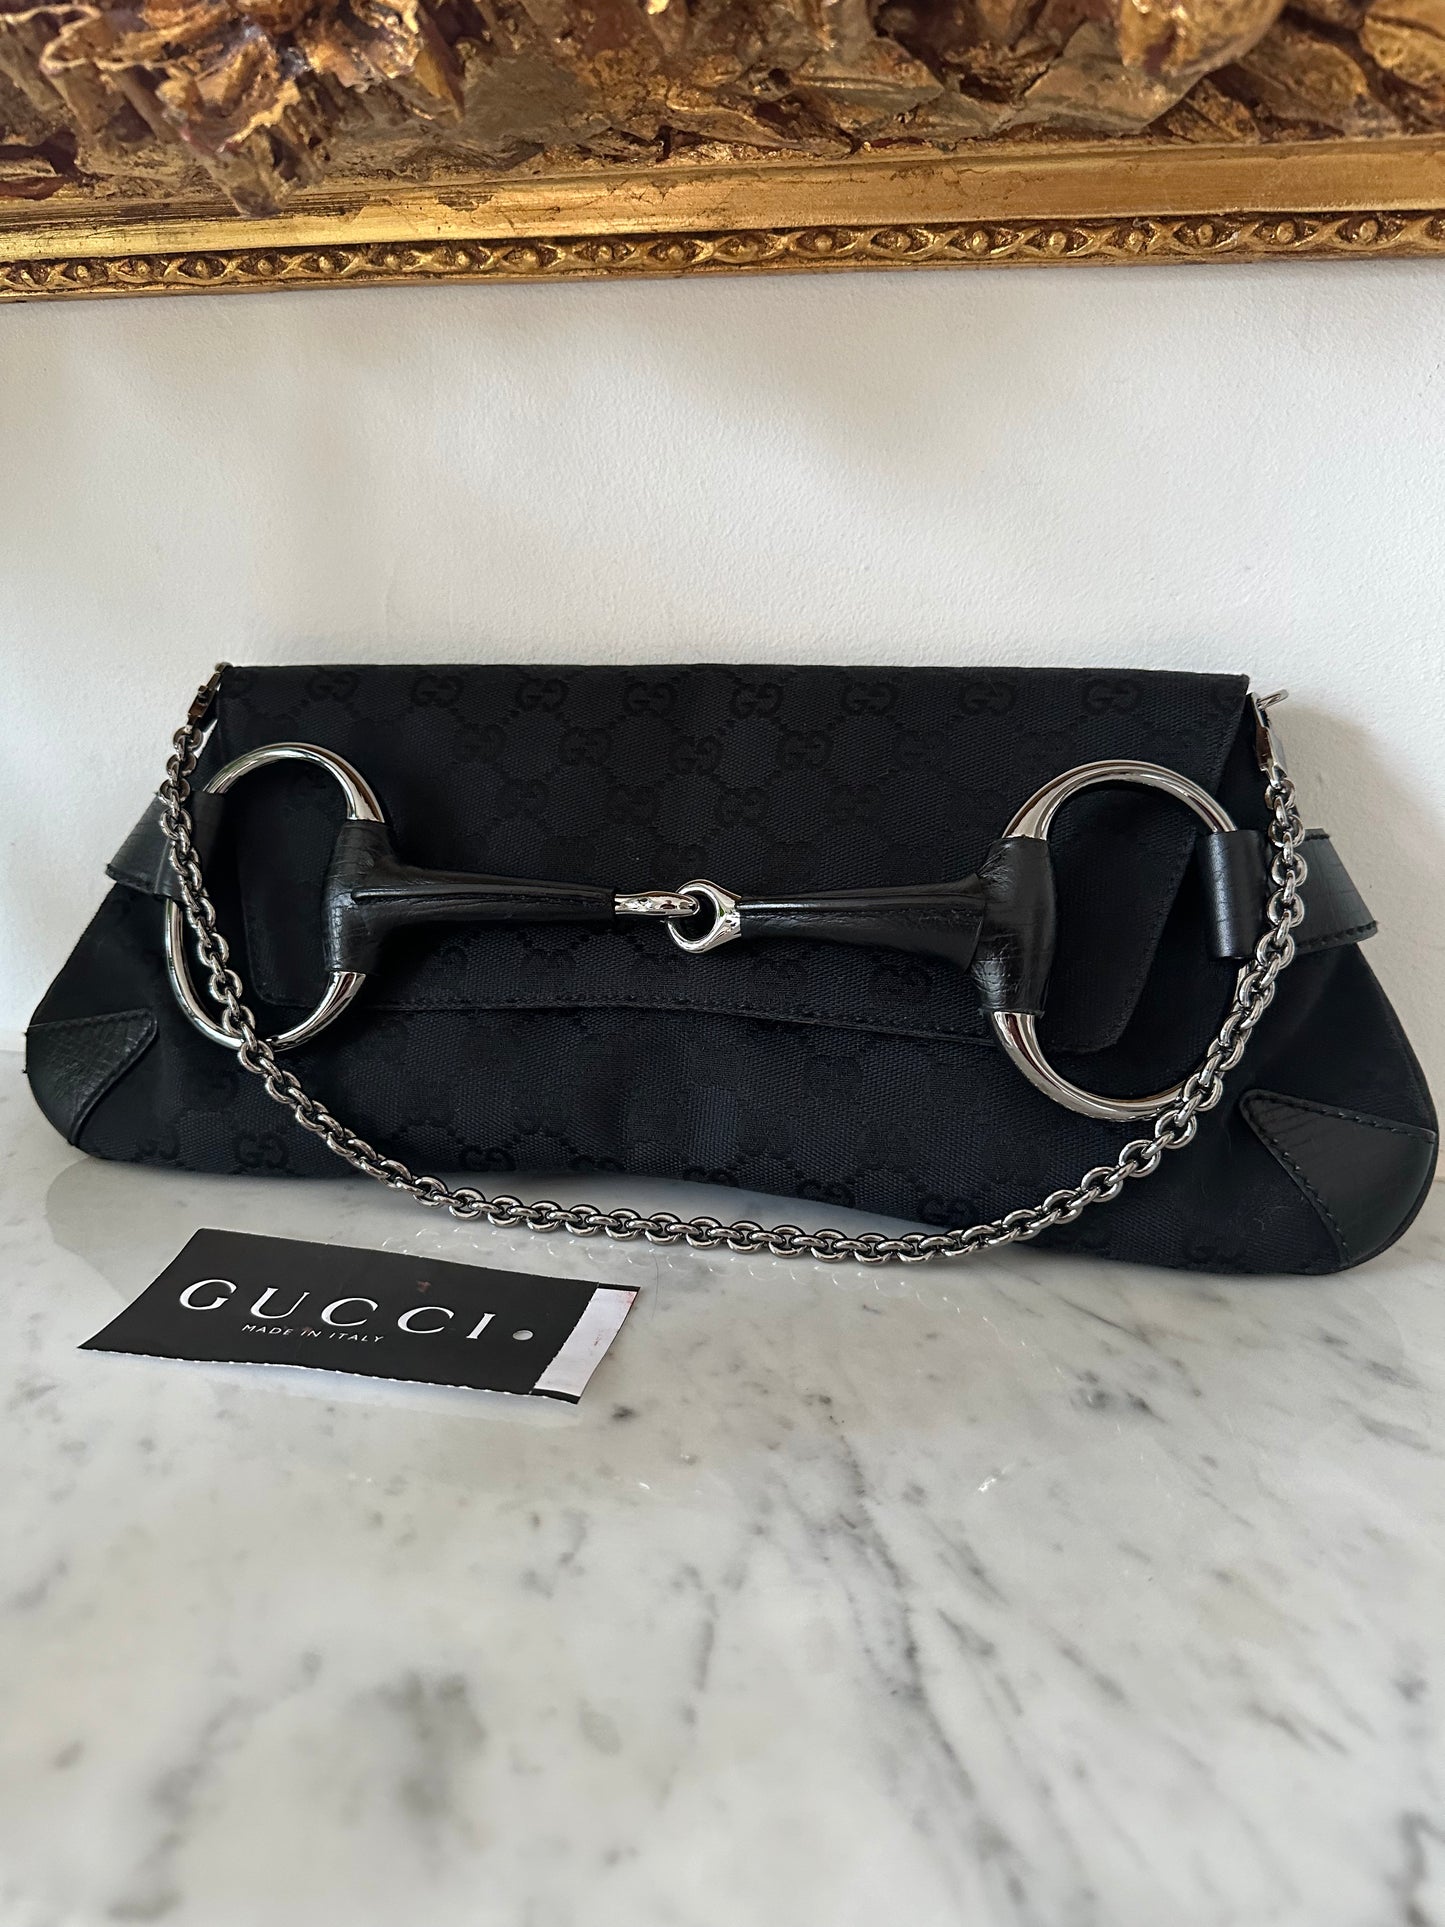 Gucci Horsebit Chain bag